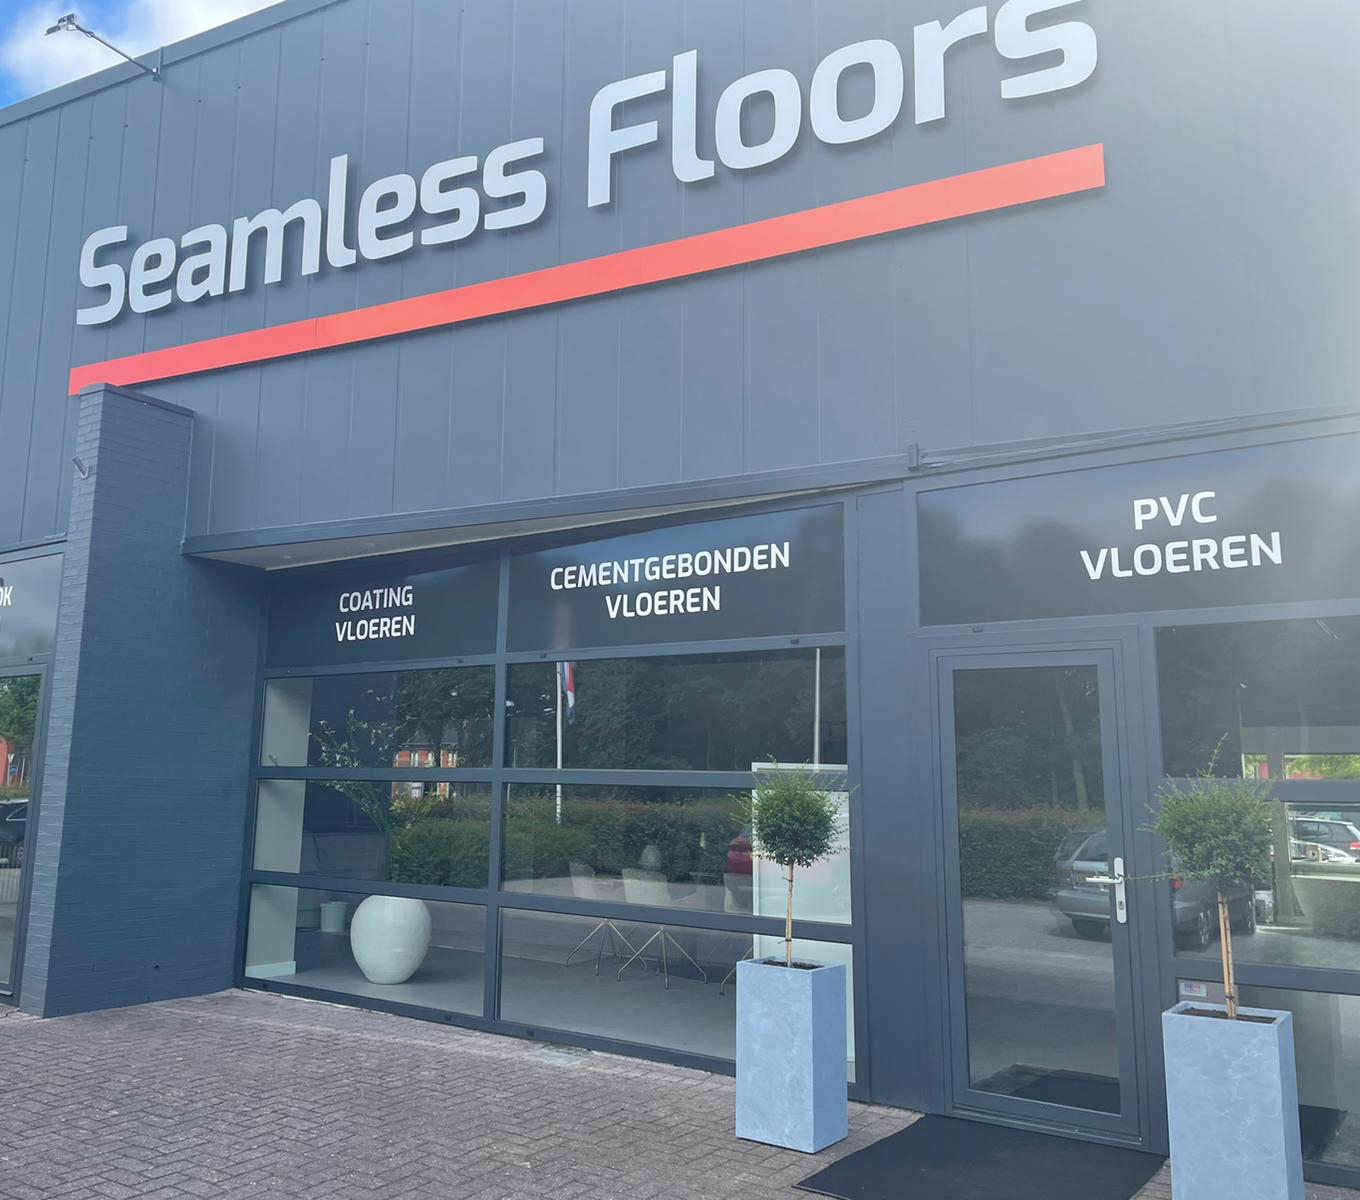 Seamlessfloors.nl